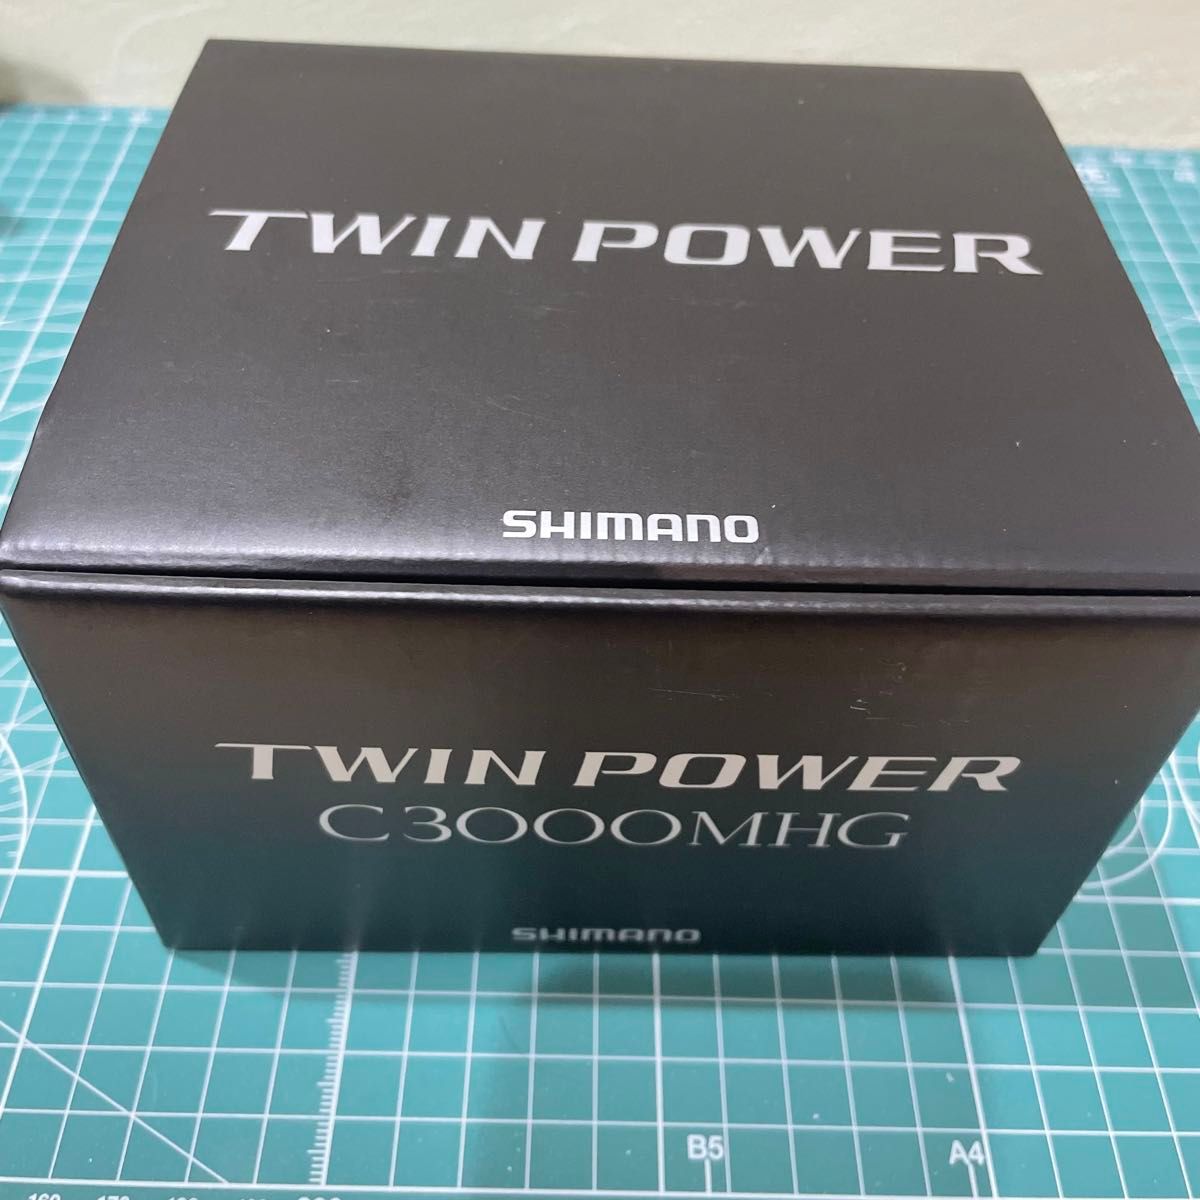 20 ツインパワー C3000MHG シマノ SHIMANO TWIN POWER